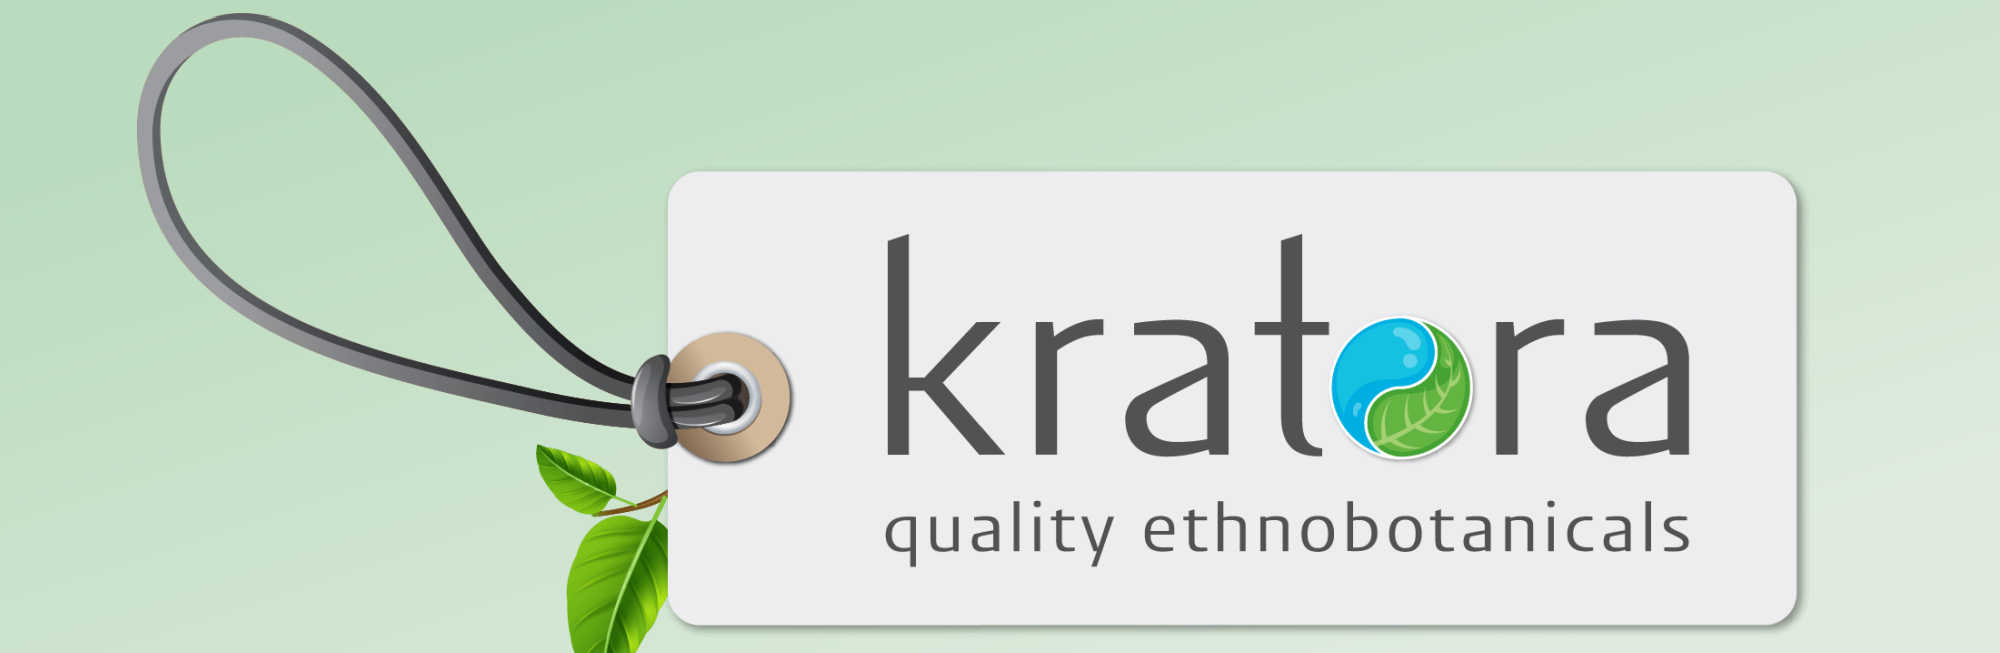 image of kratora logo